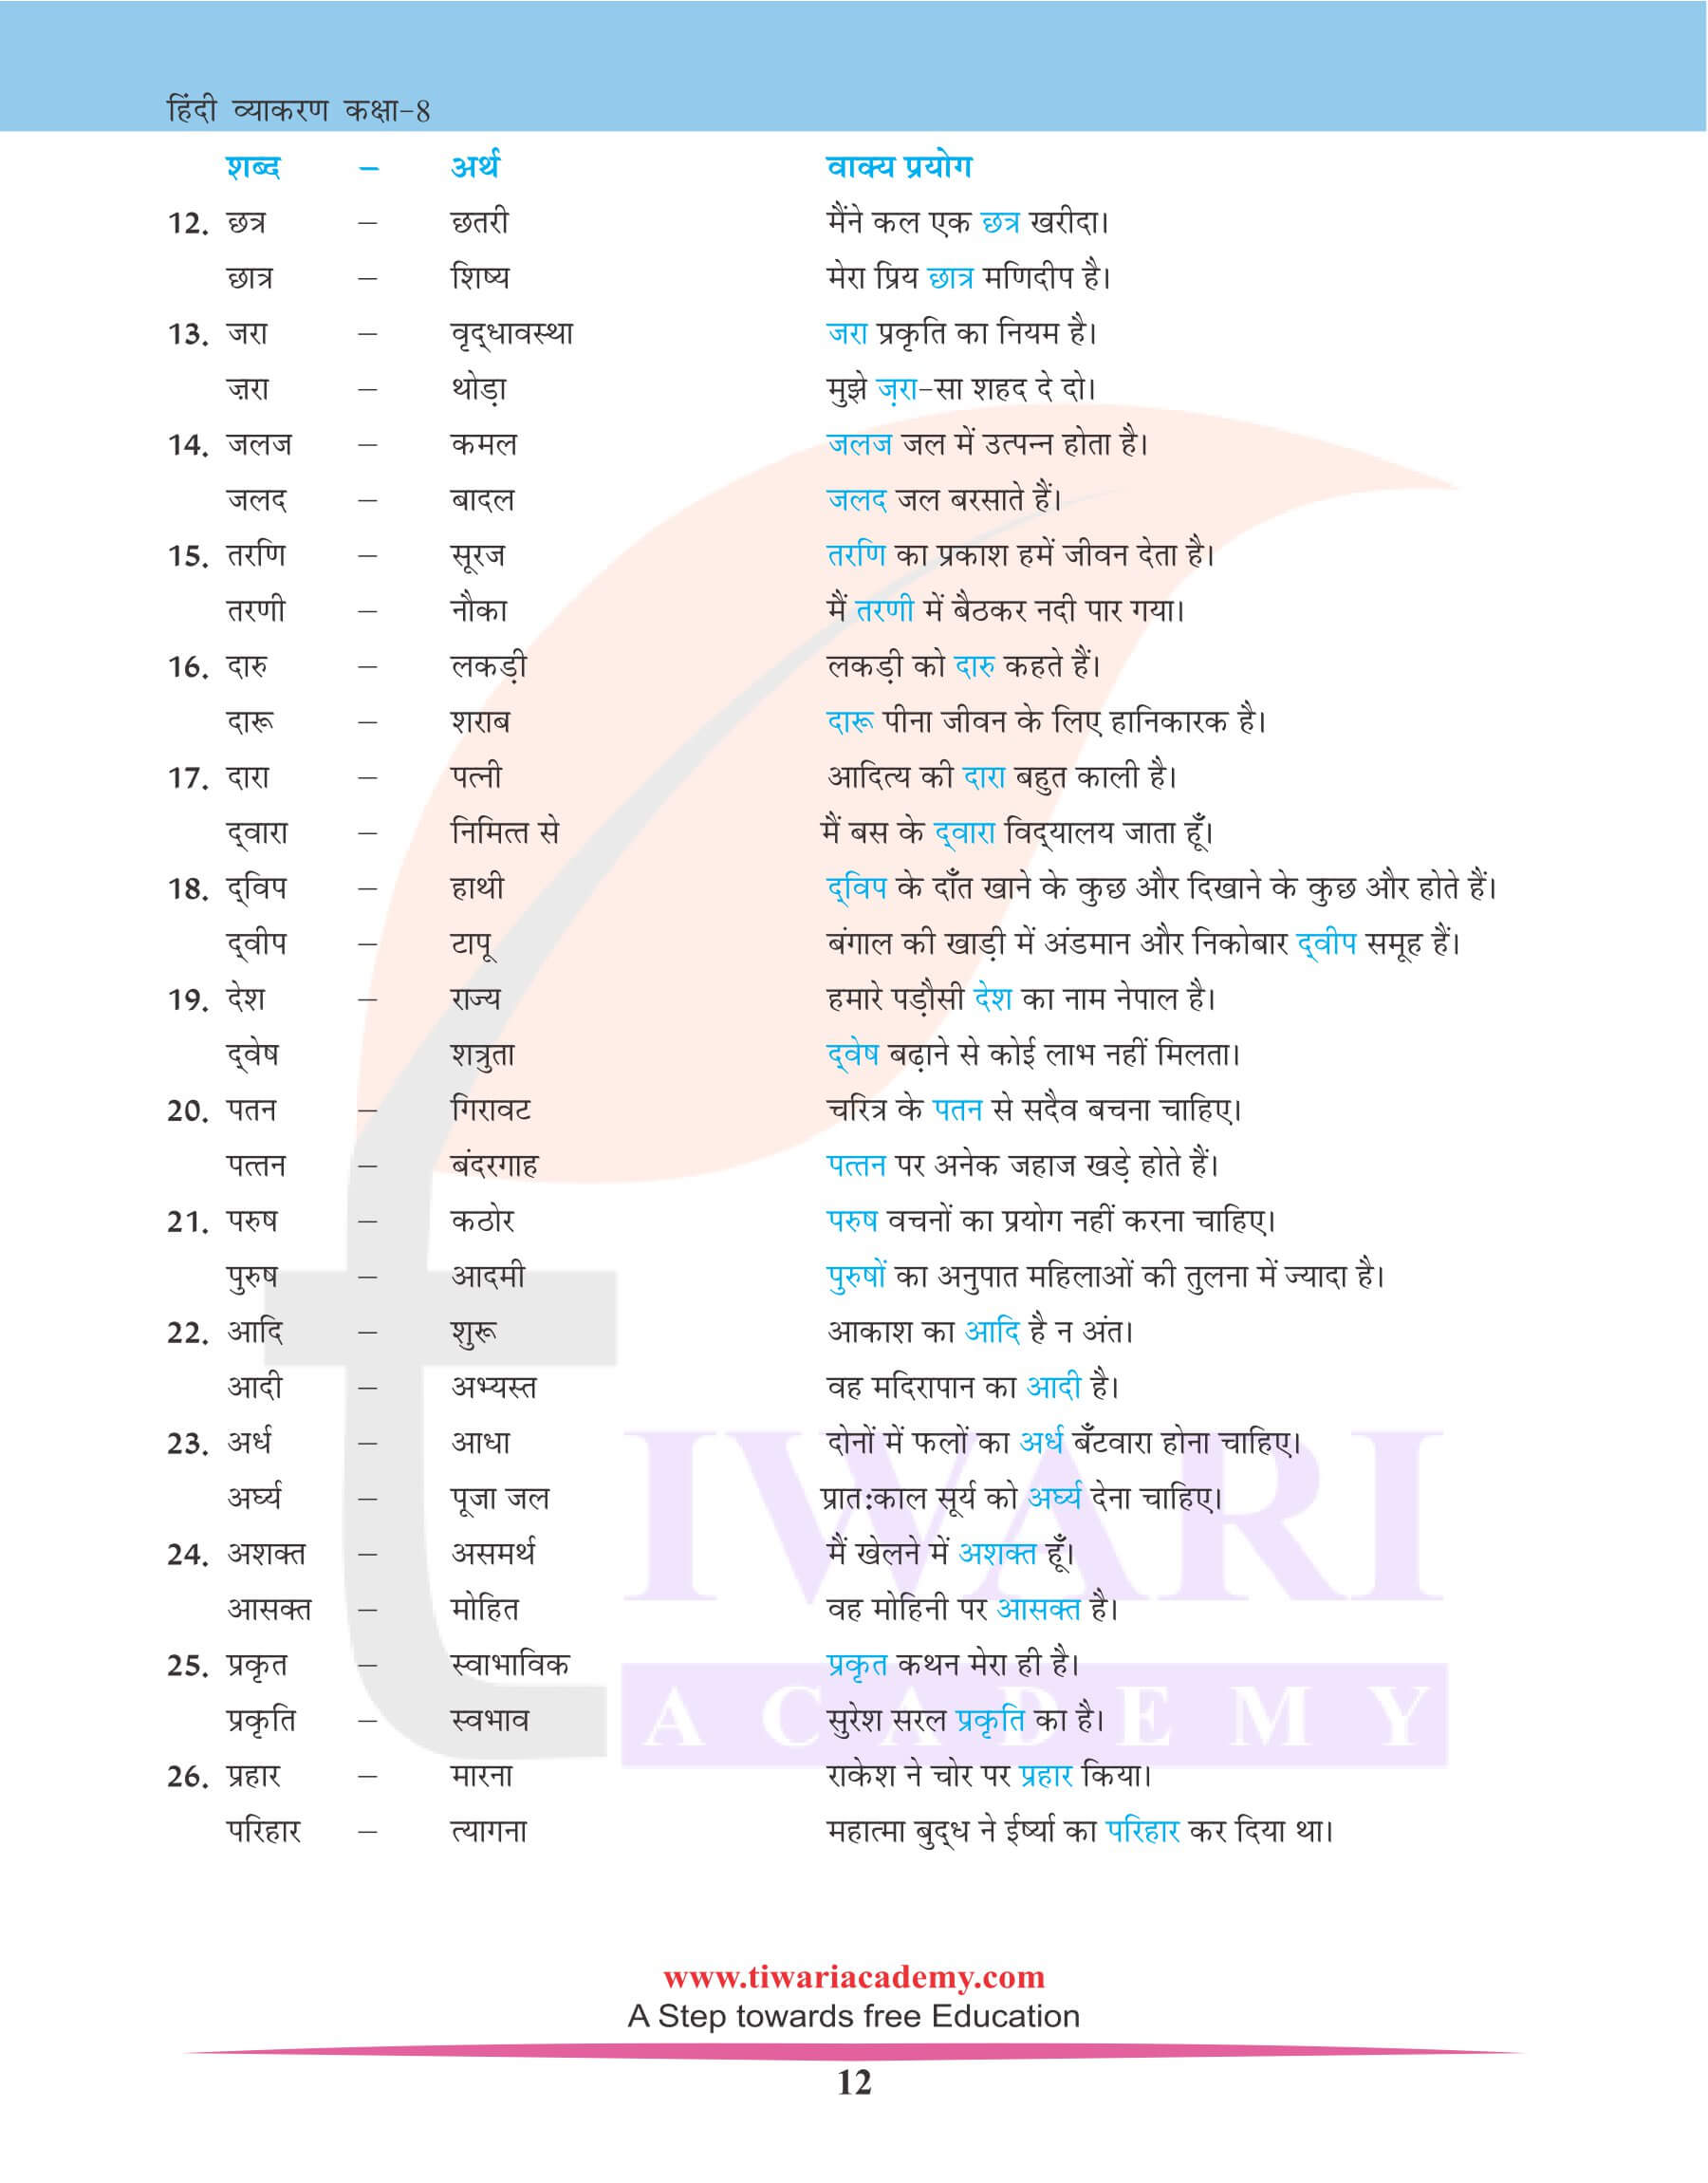 कक्षा 8 हिंदी व्याकरण में भिन्नार्थक शब्द के उदाहरण